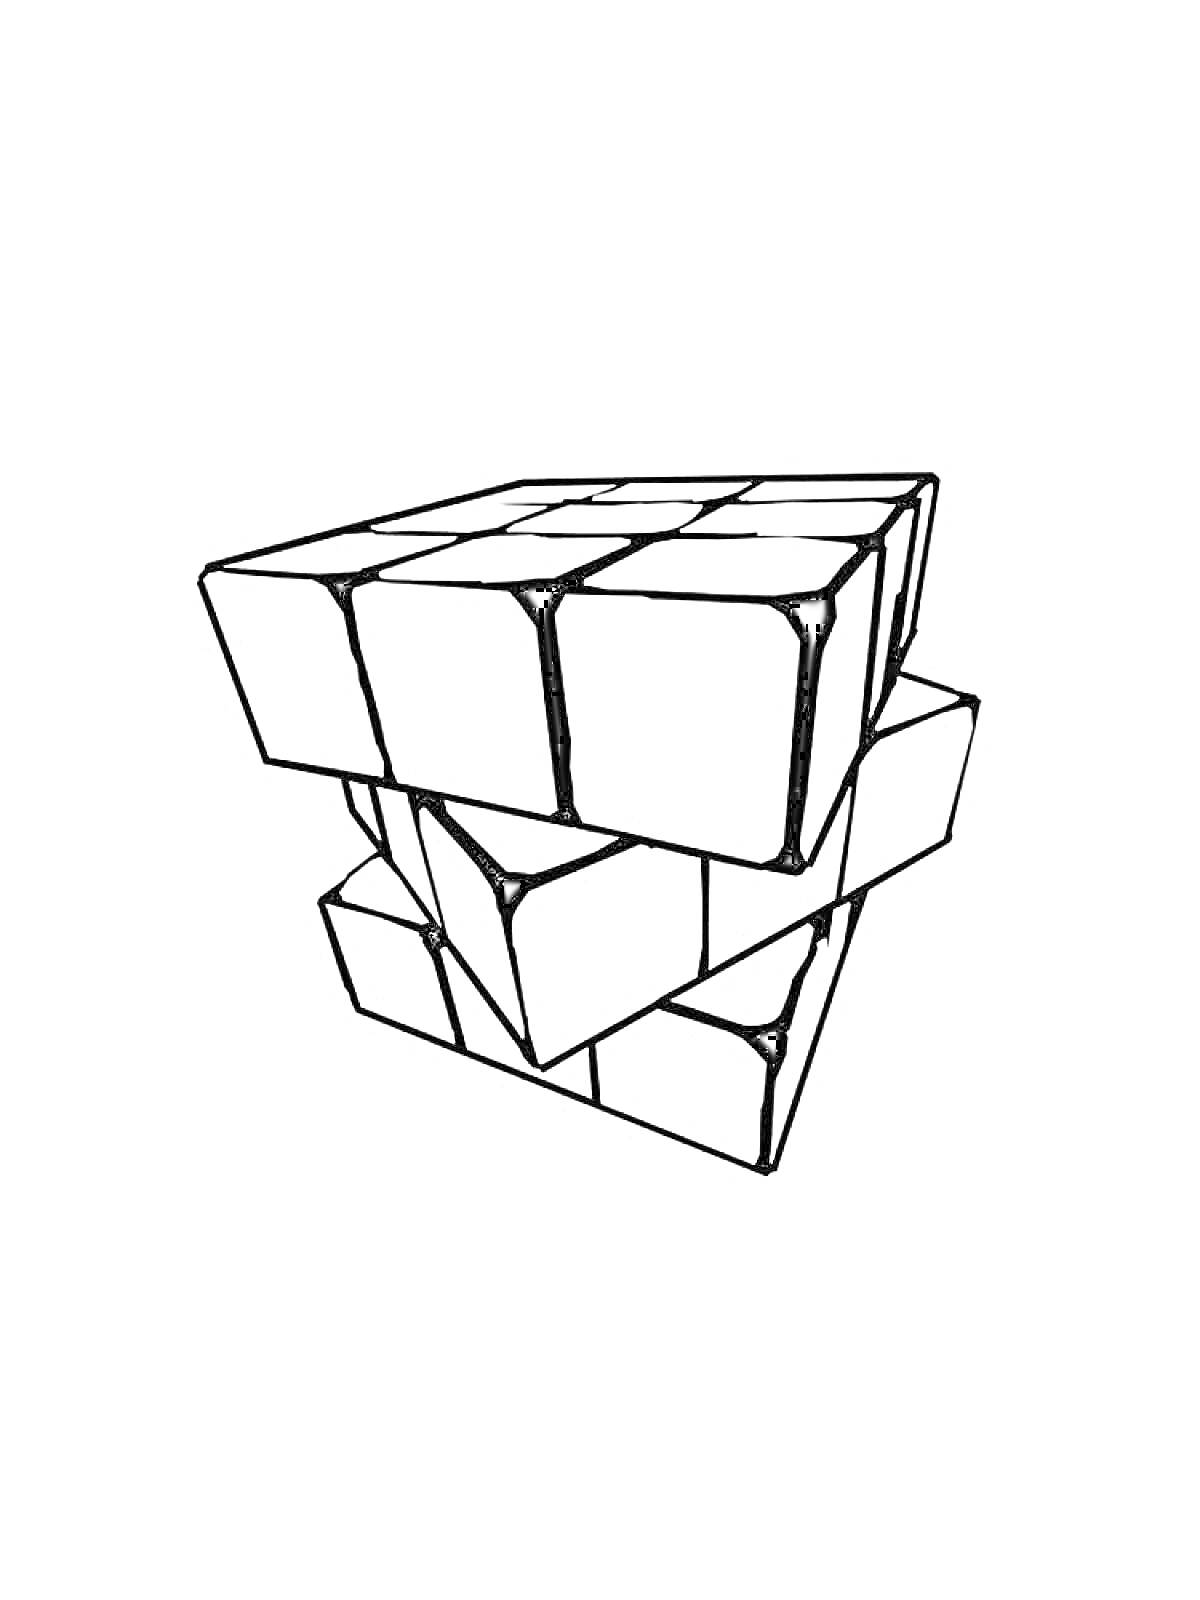 Раскраска Разворотный кубик Рубика с отдельными черными линиями